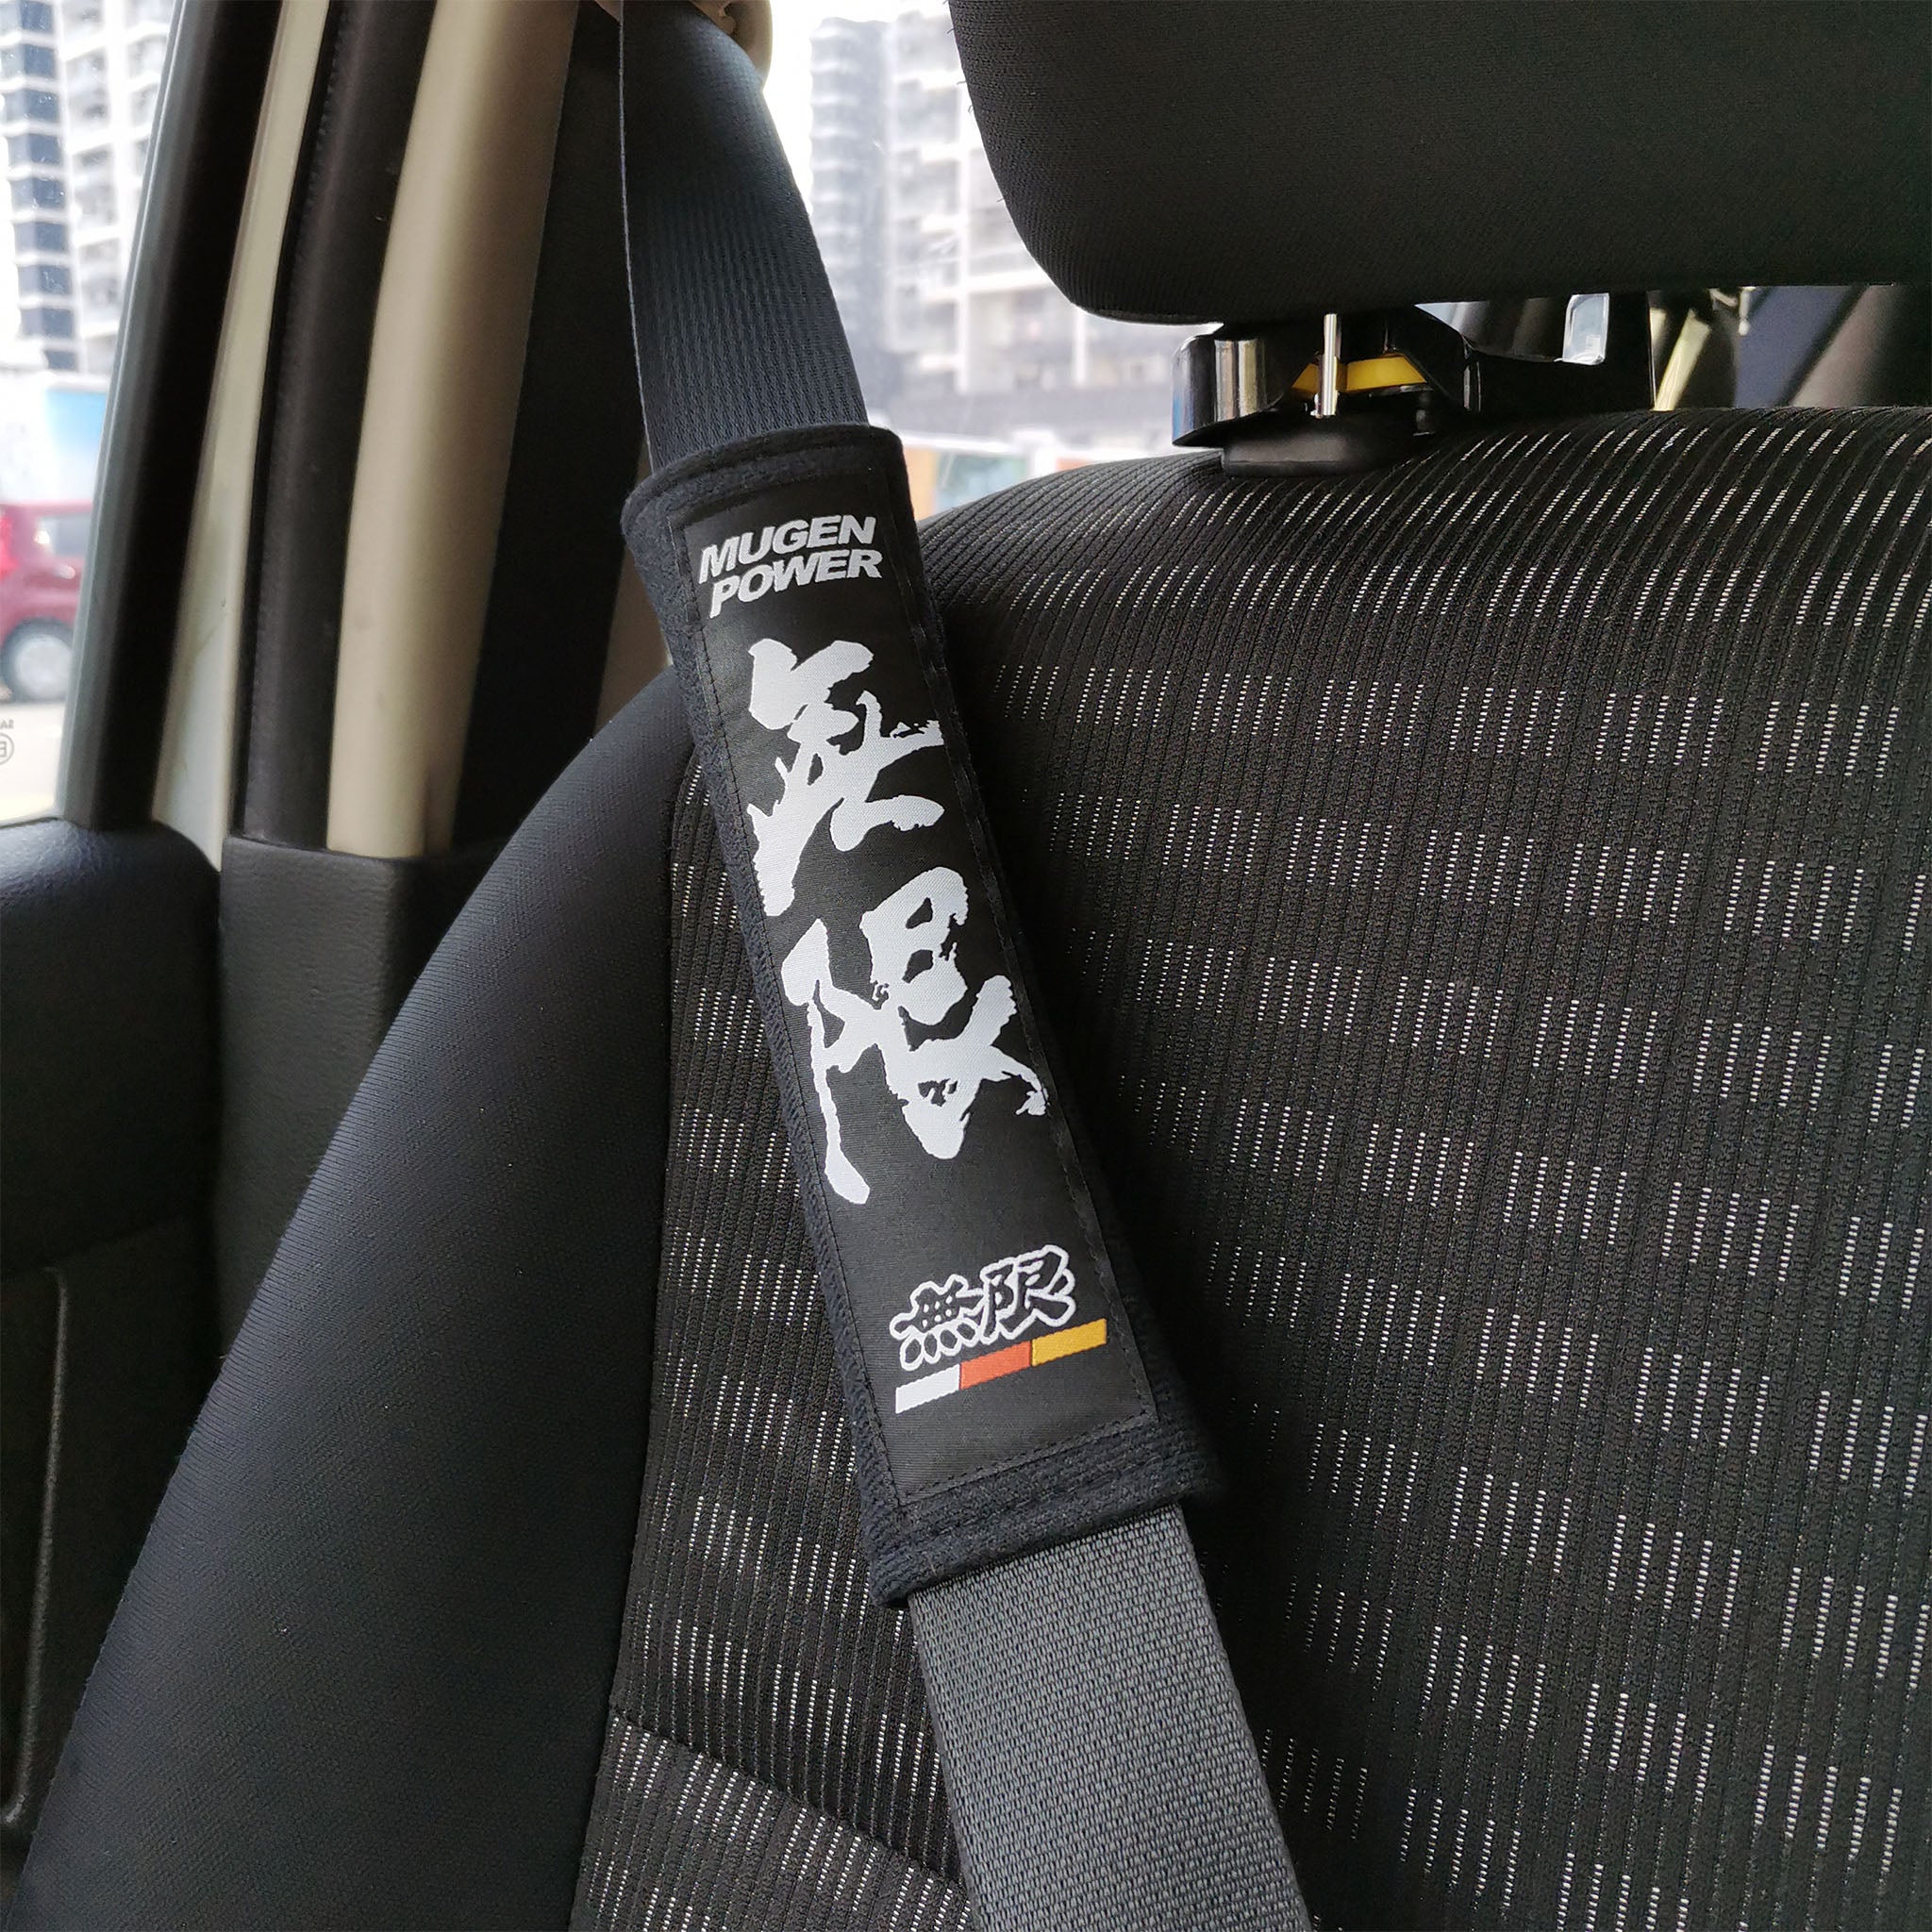 Mugen power seat belt shoulder pads in black installed in car.